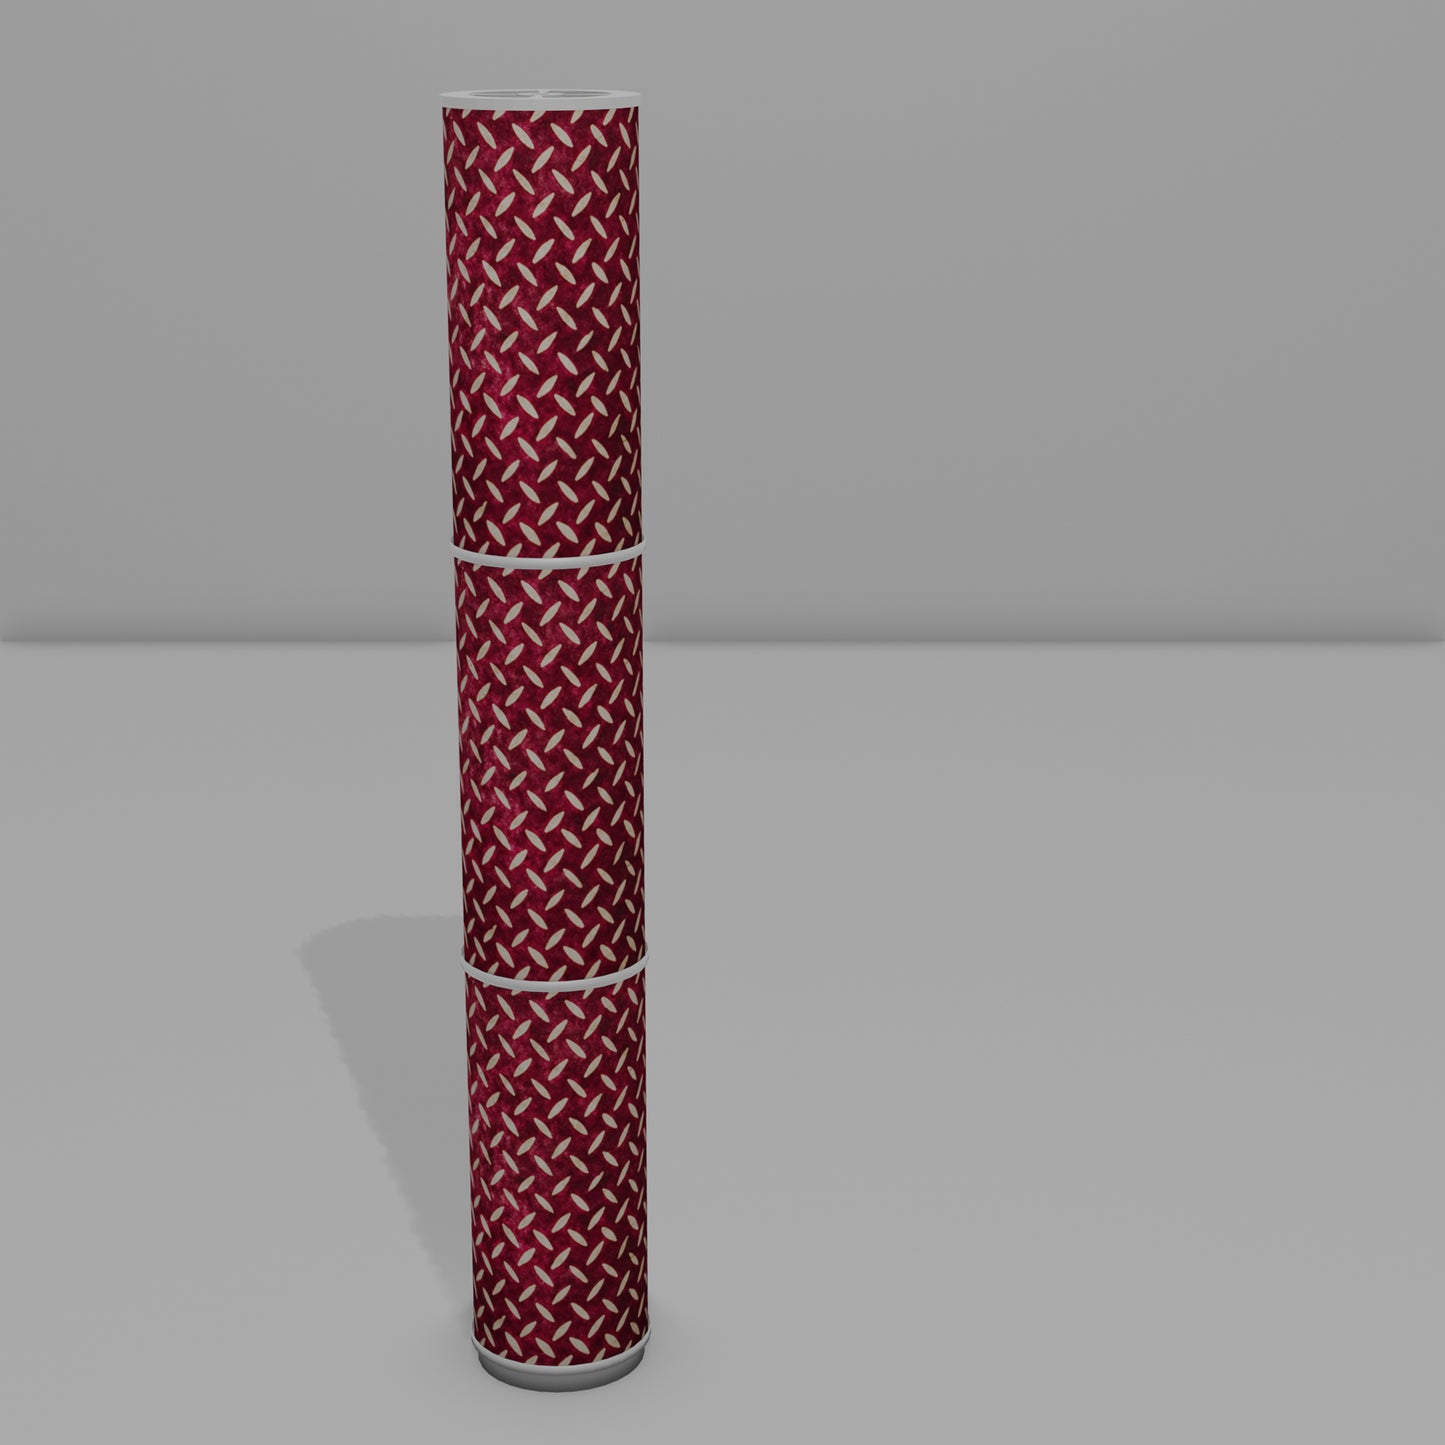 3 Panel Floor Lamp - P14 - Batik Tread Plate Cranberry, 20cm(d) x 1.4m(h)